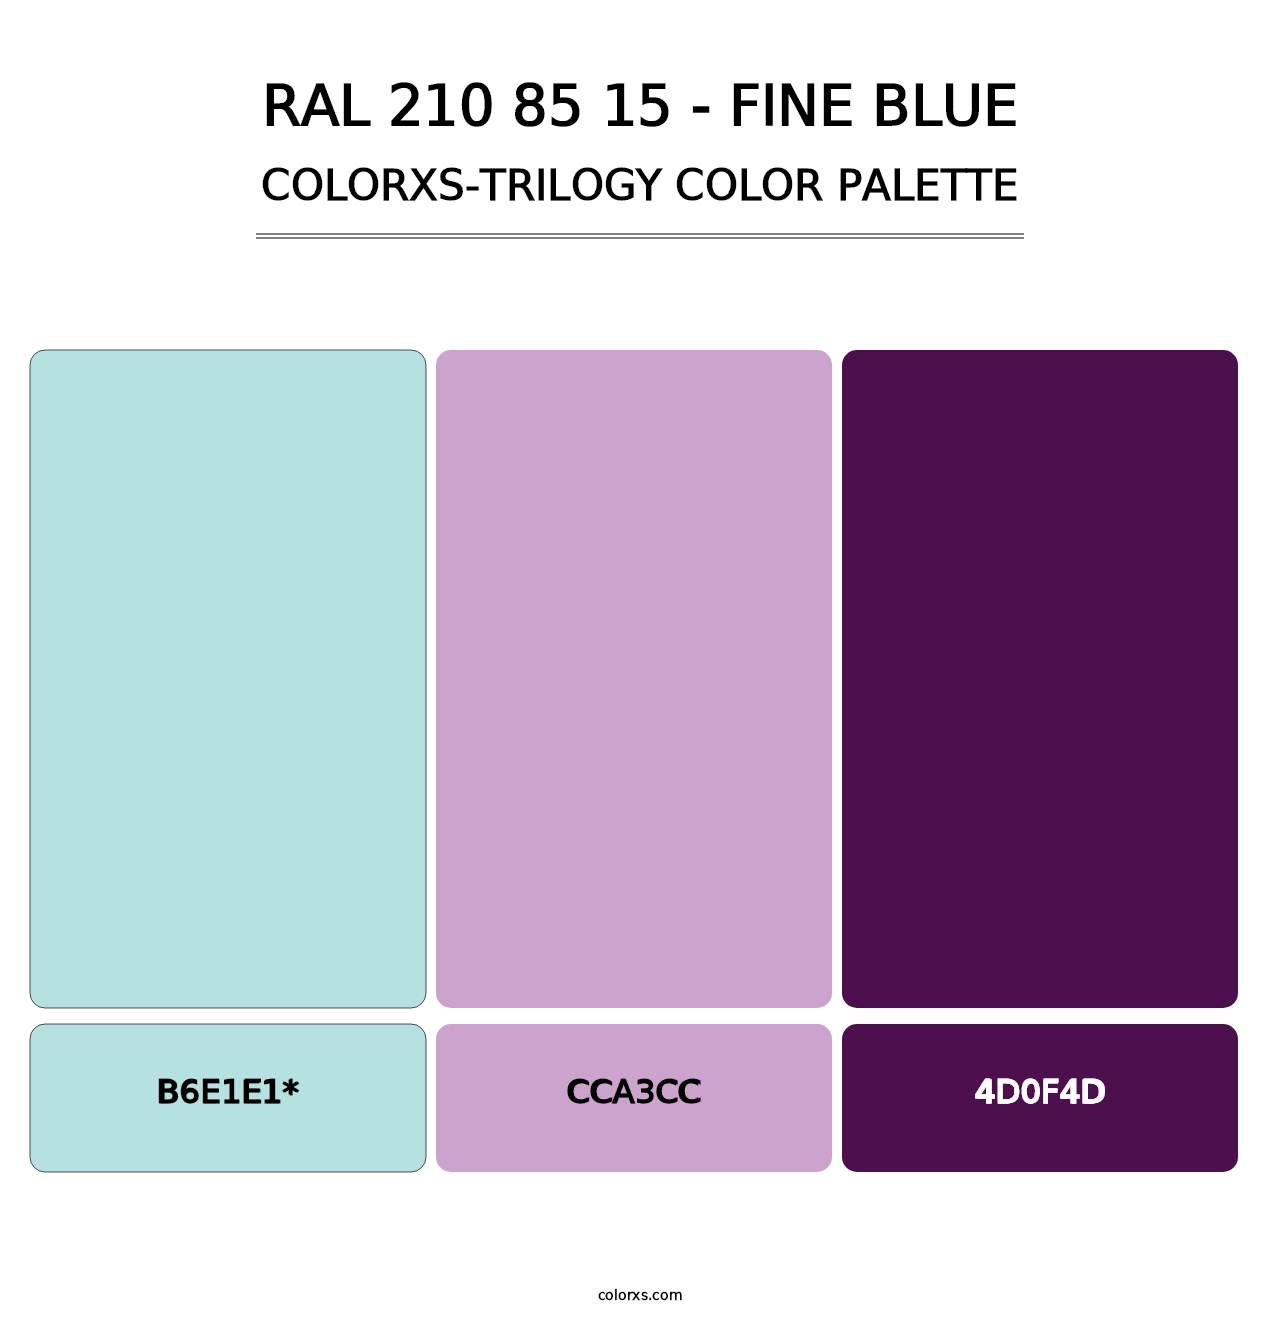 RAL 210 85 15 - Fine Blue - Colorxs Trilogy Palette